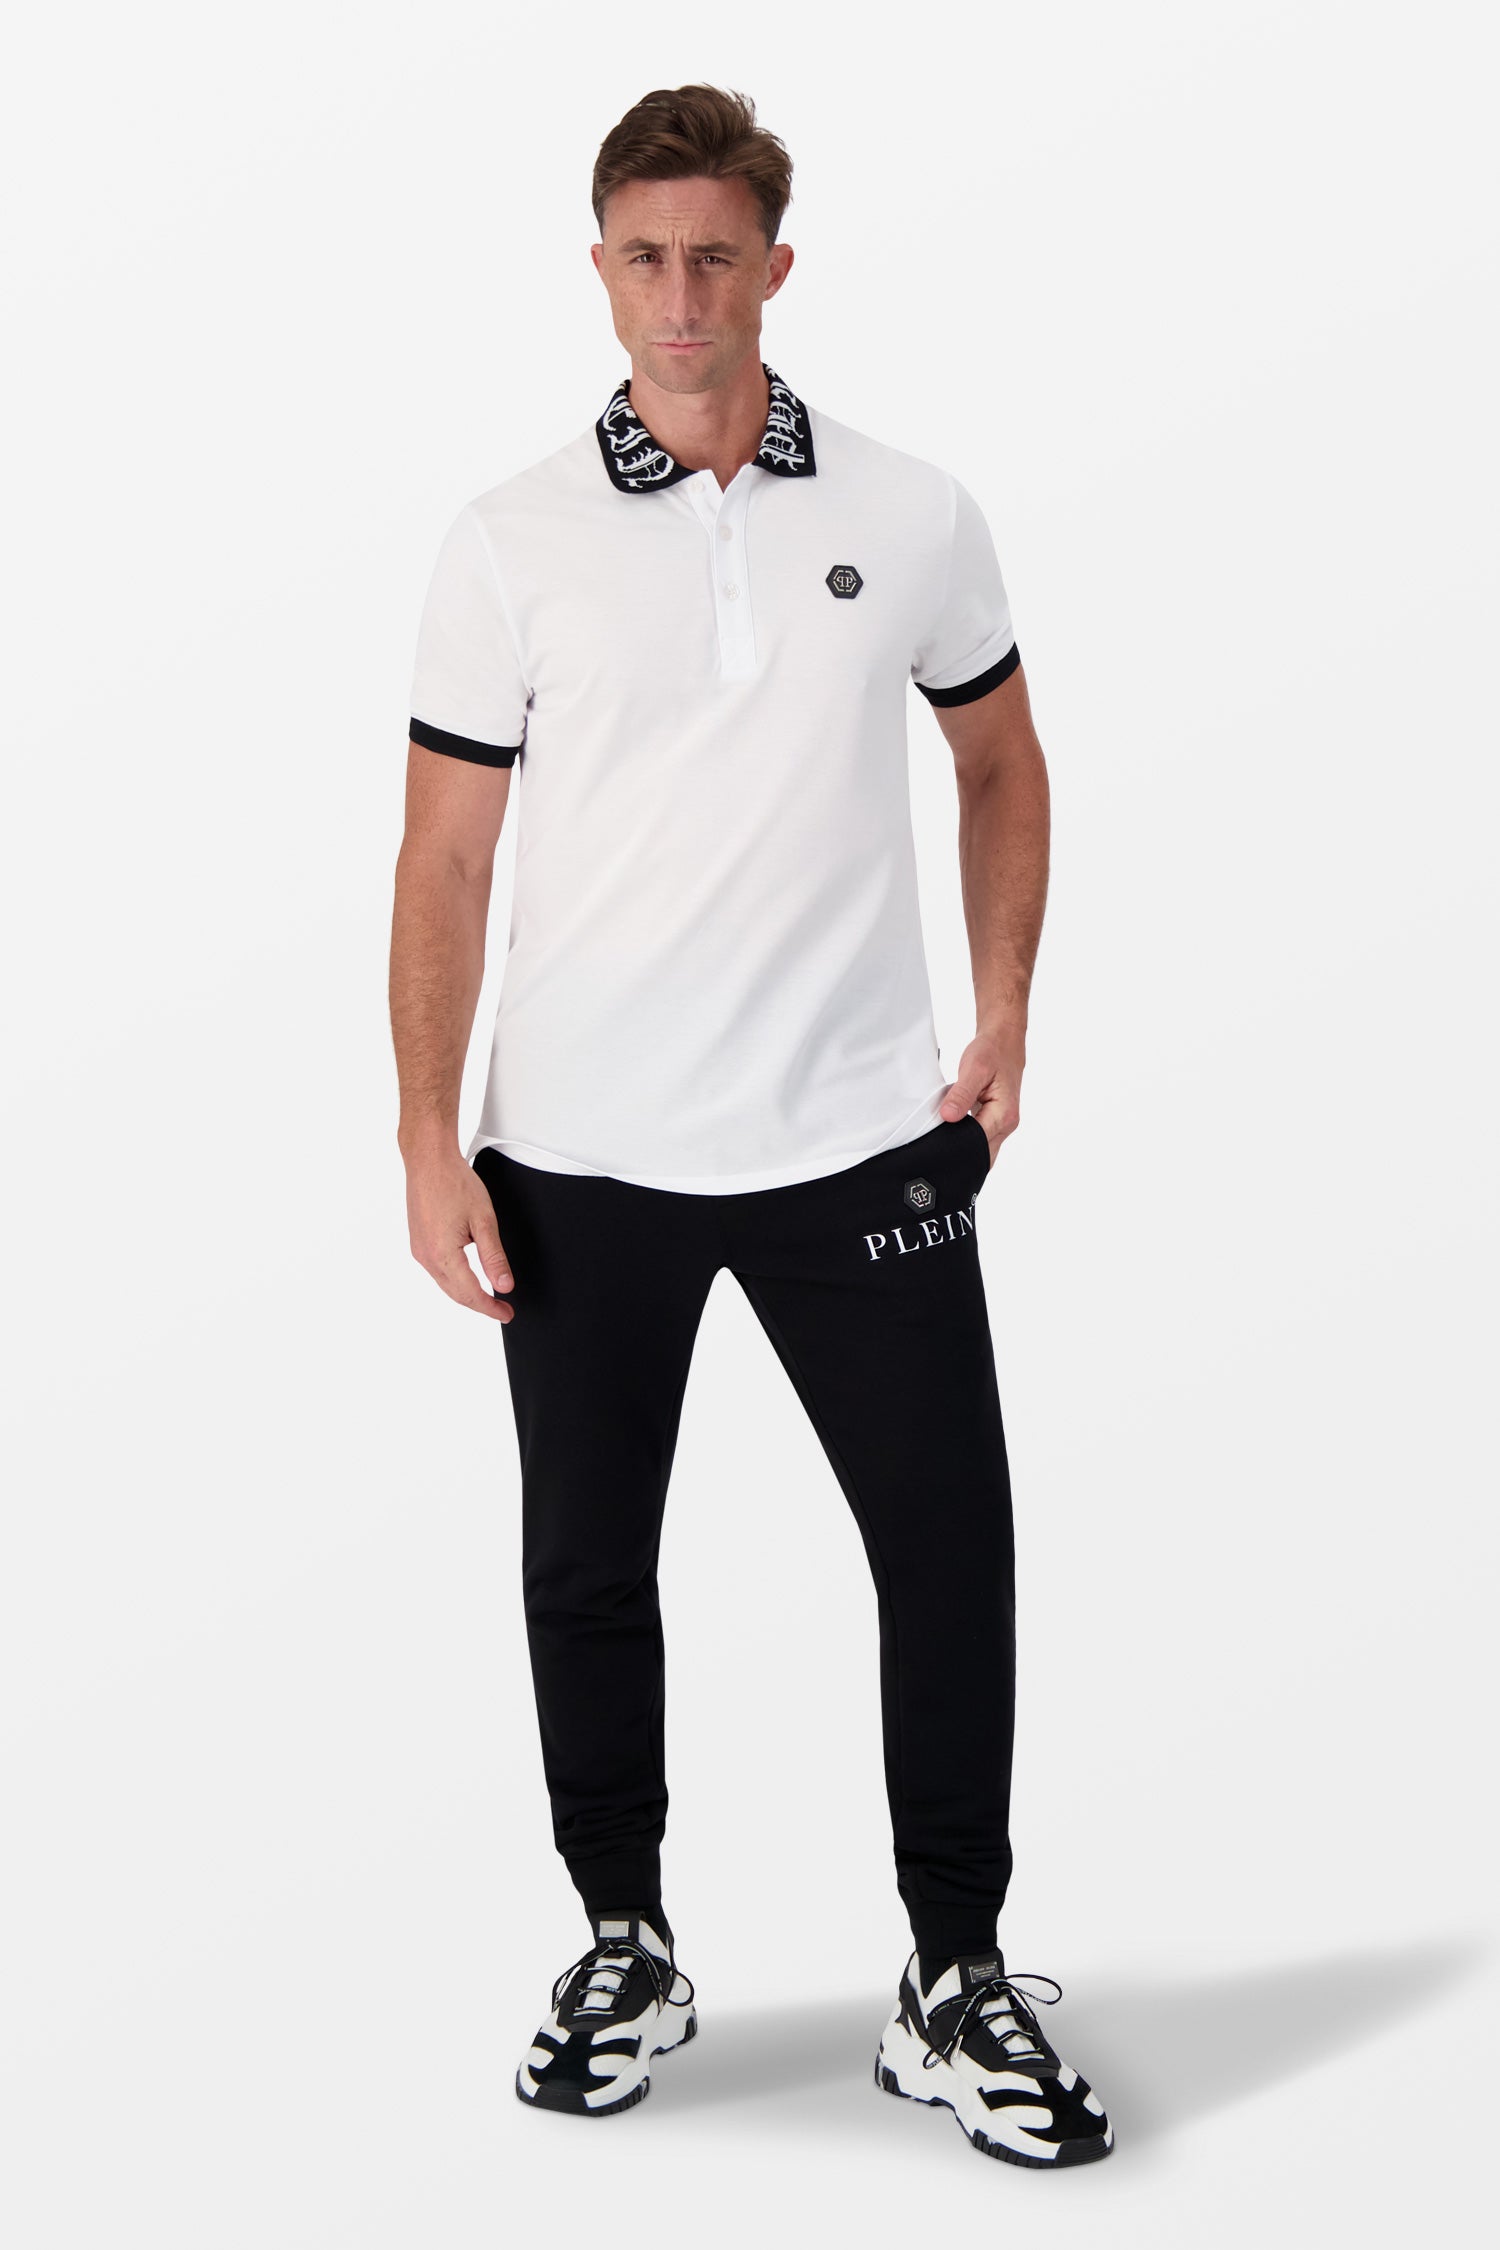 Philipp Plein White Short-Sleeve Polo